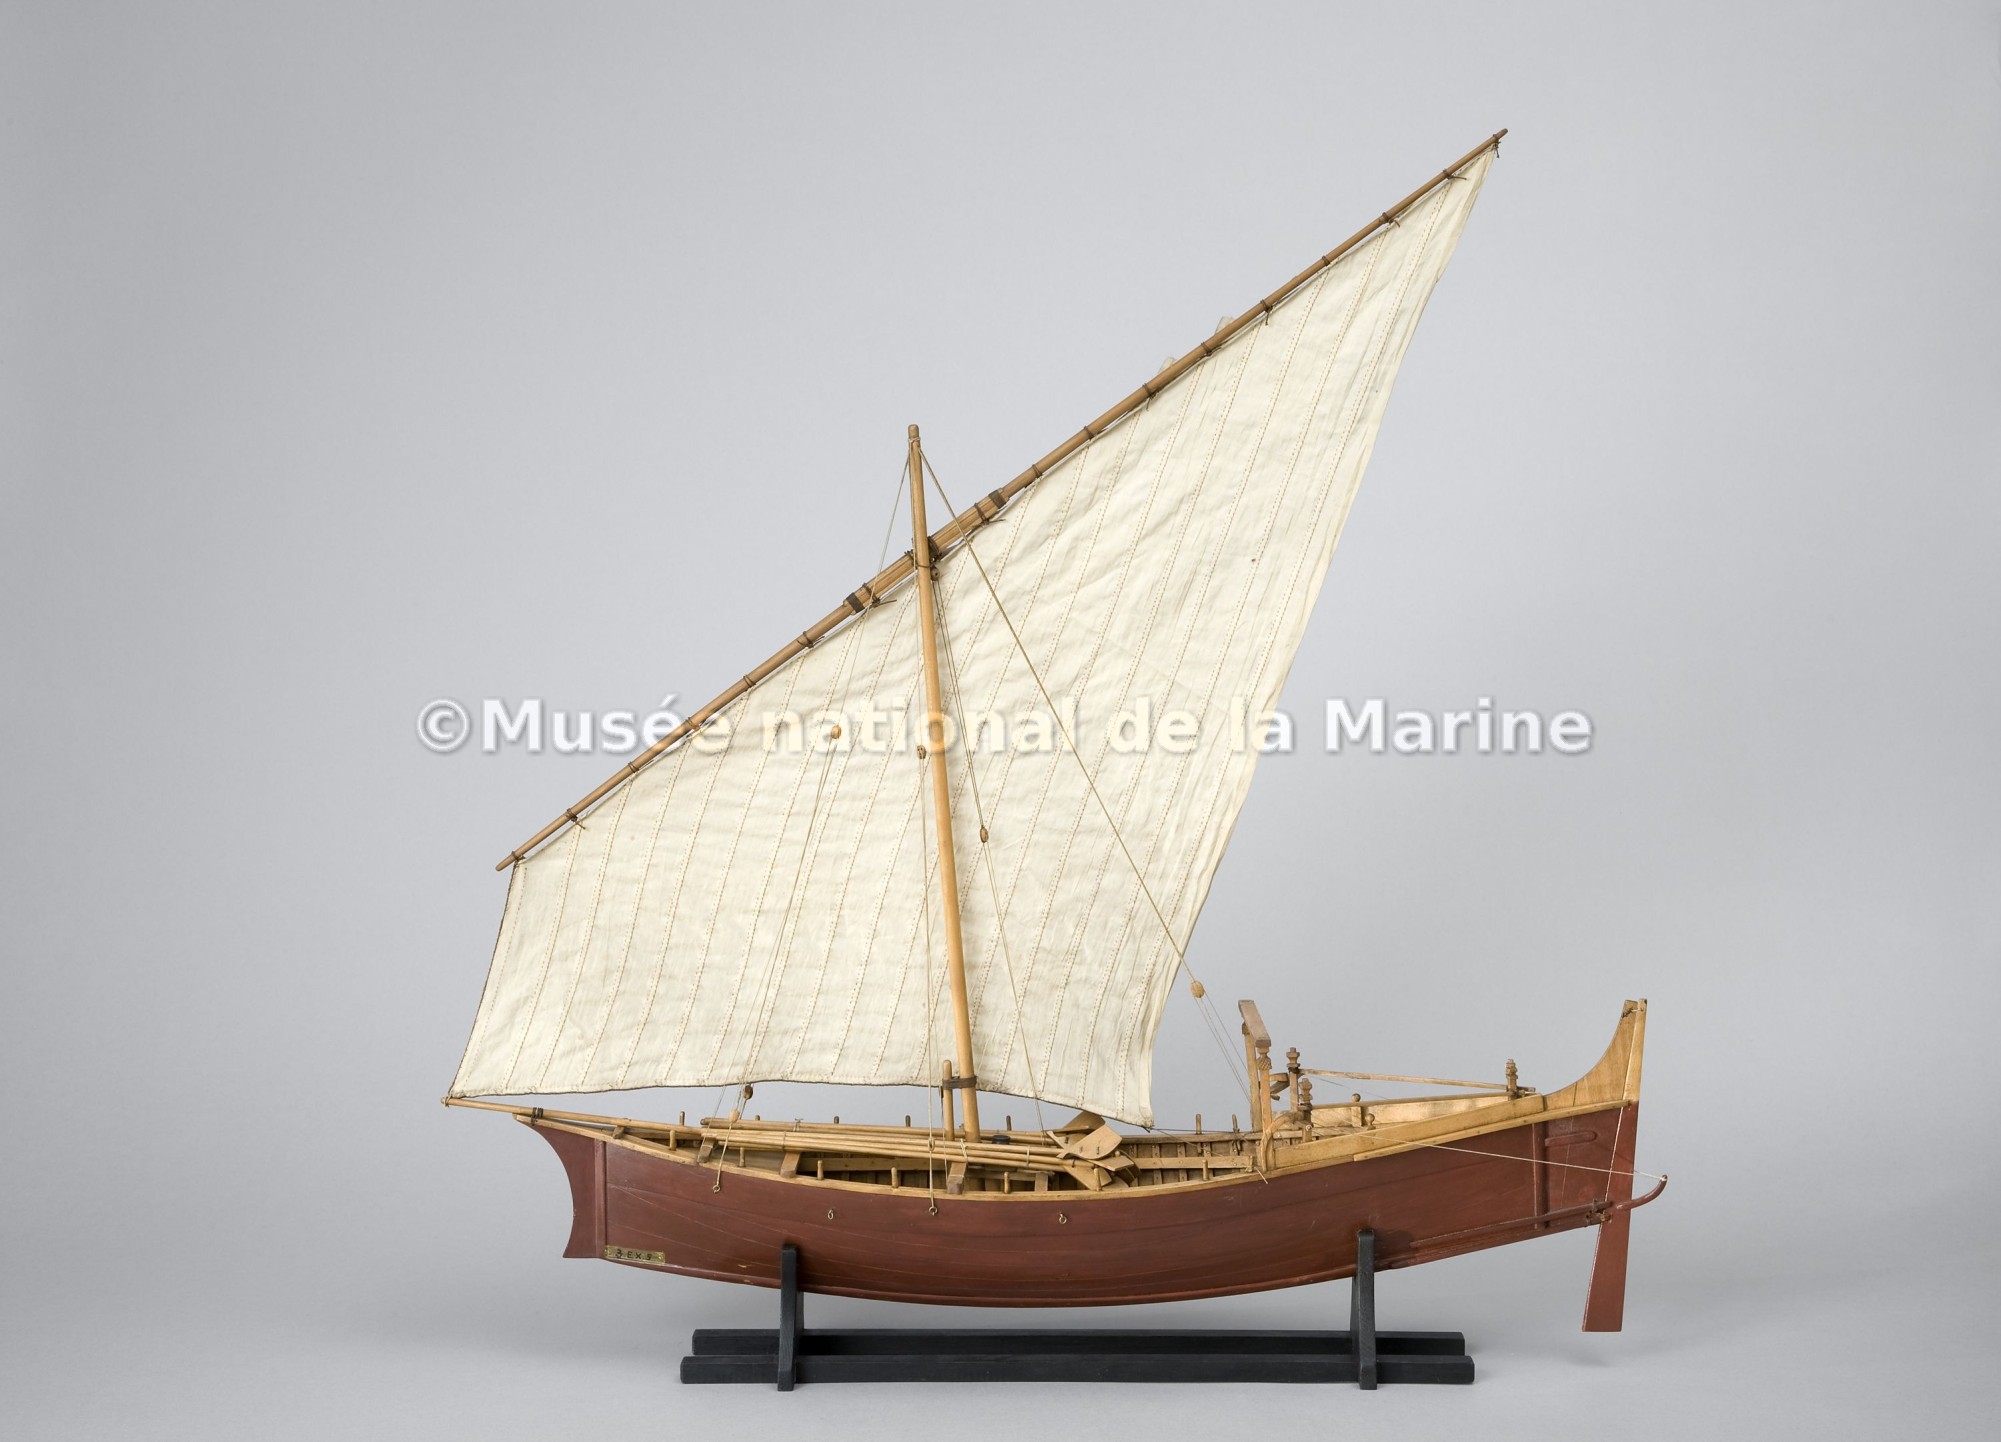 Beden safaï, bateau de pêche de Mascate